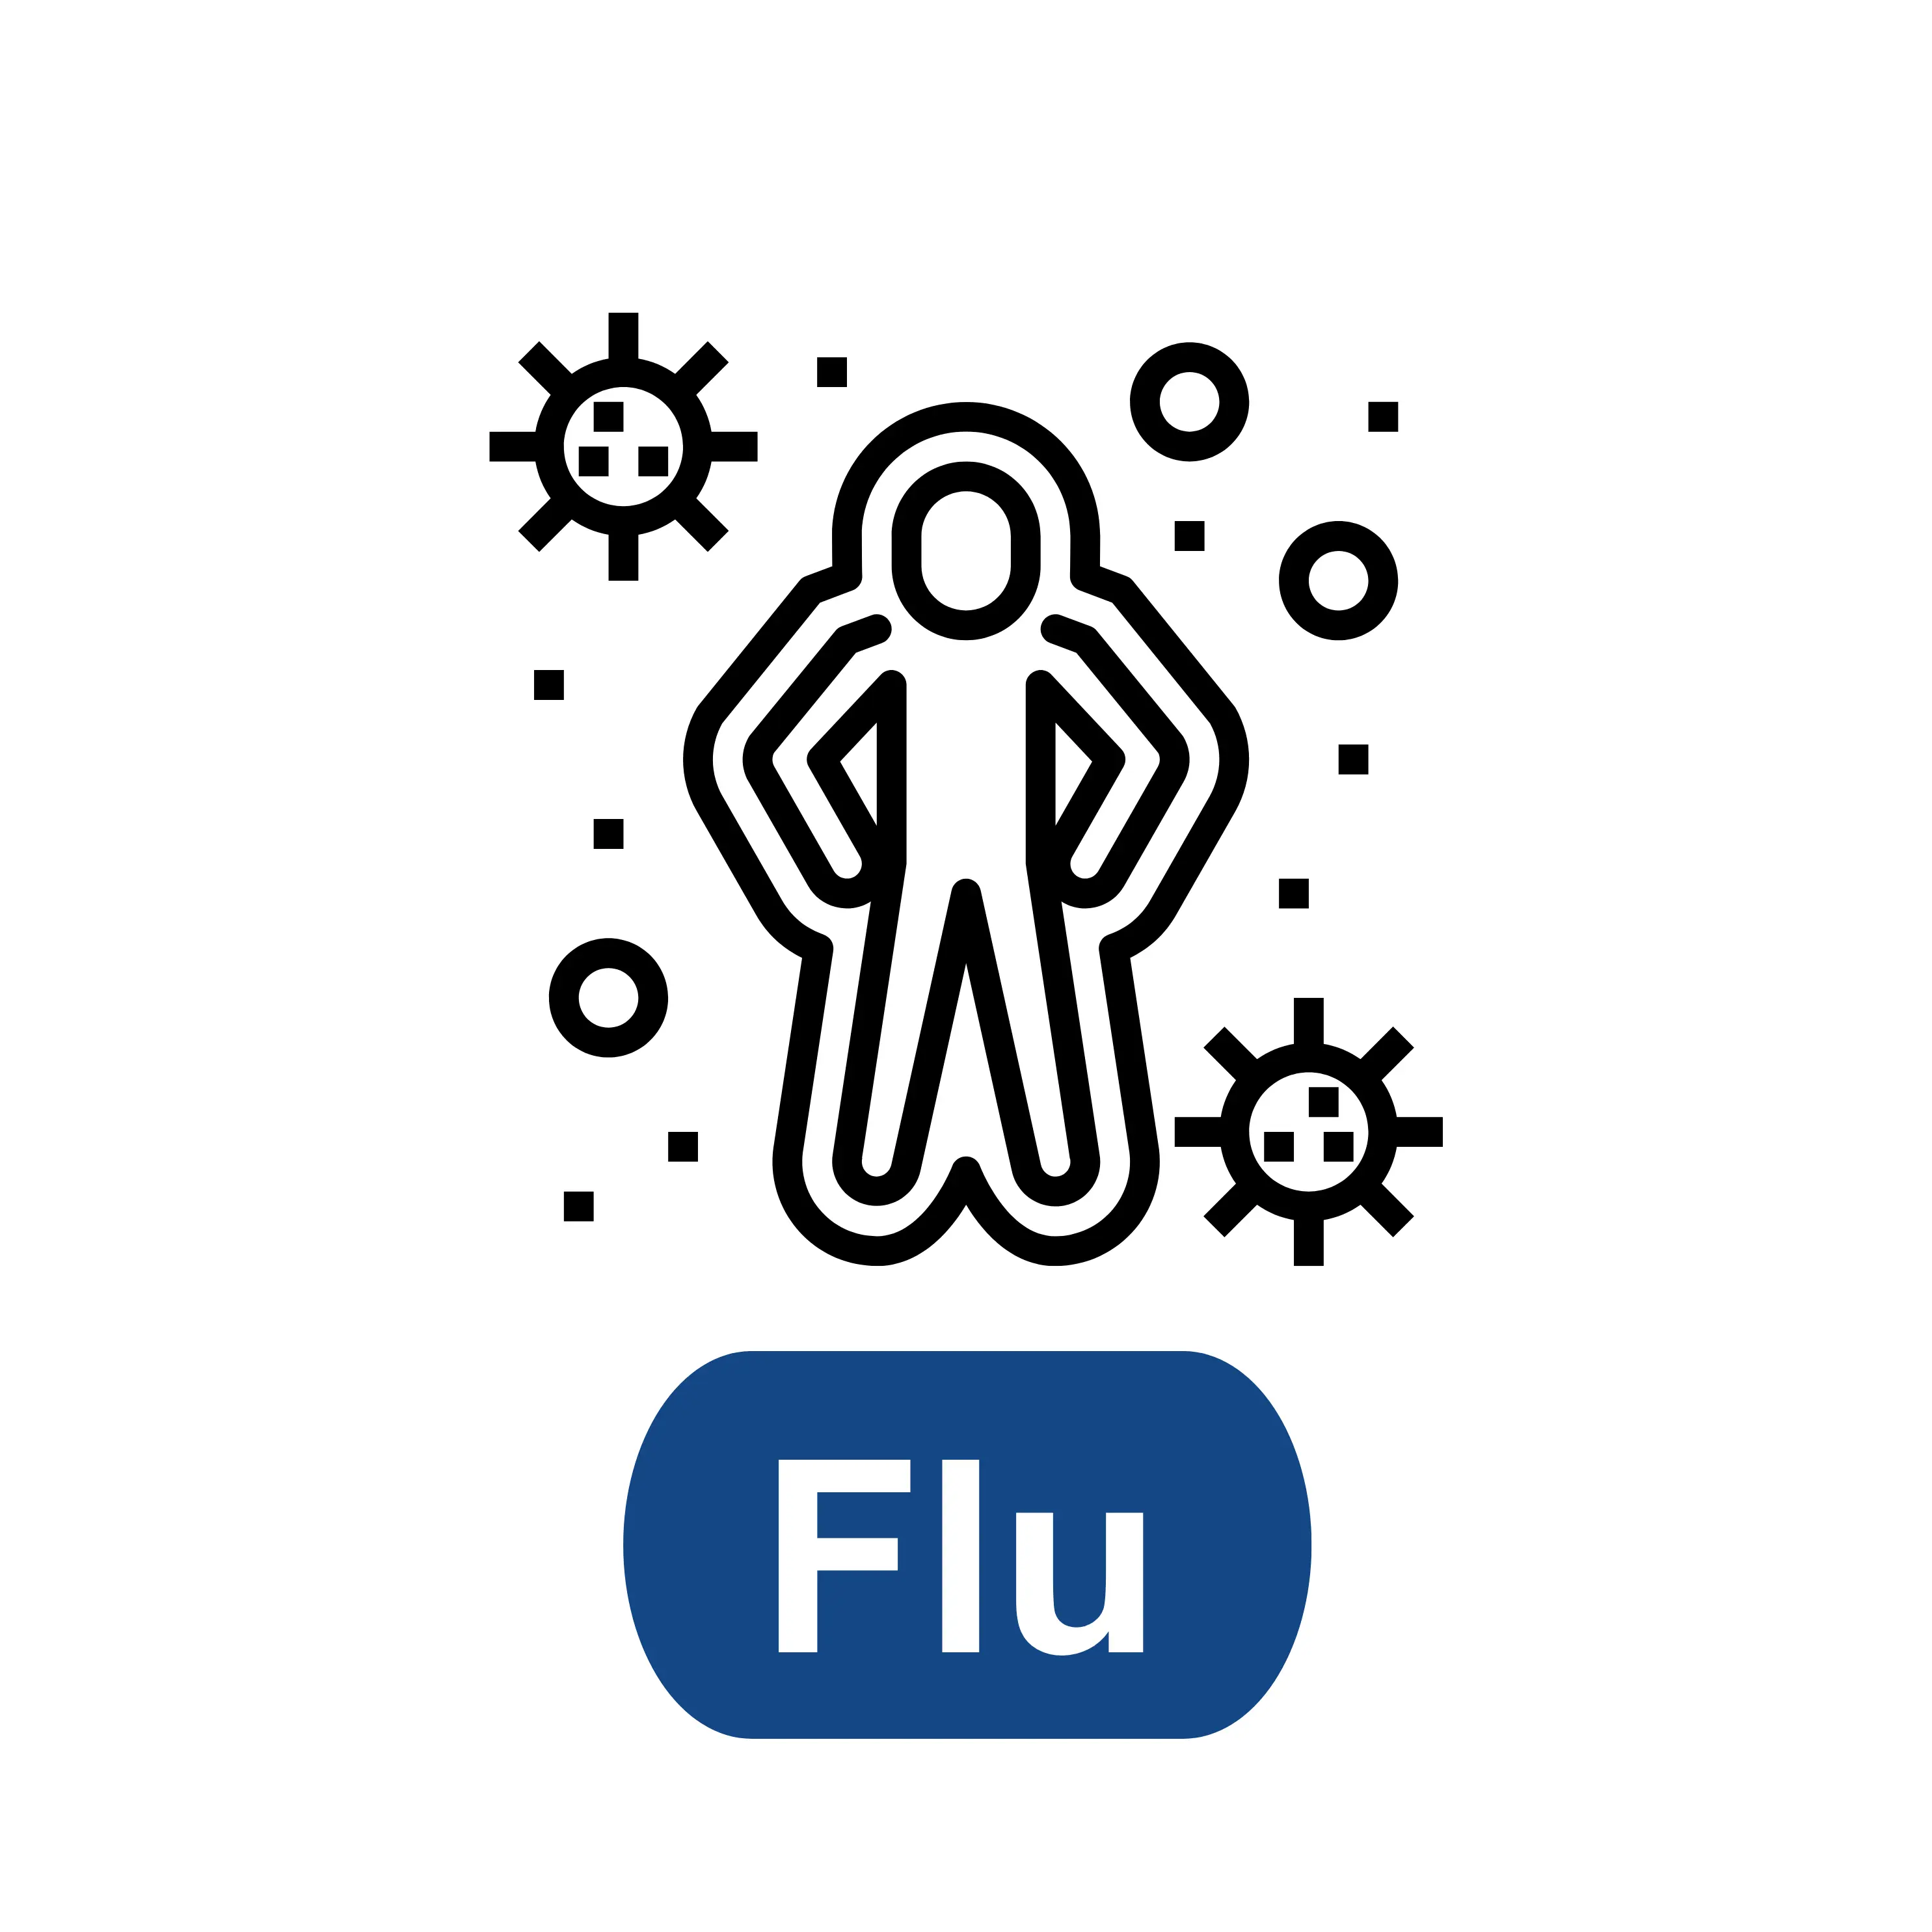 Influenza (Flu)